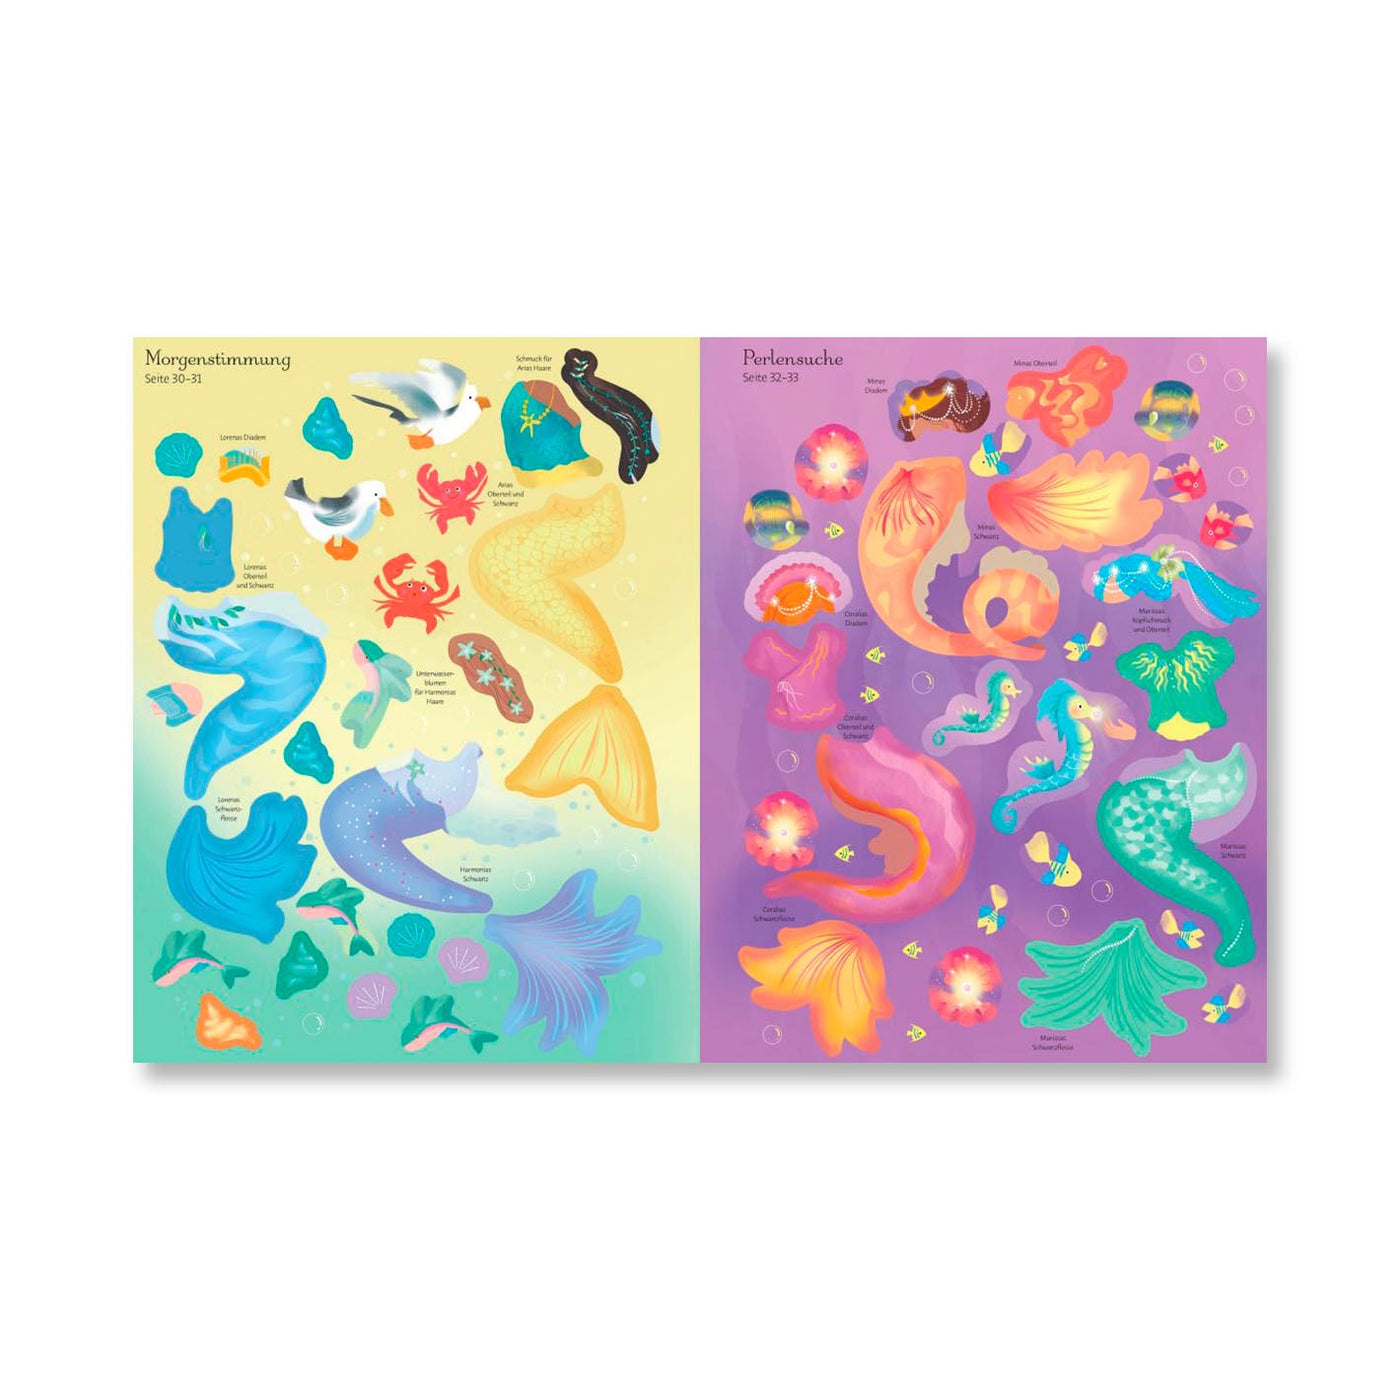 Mein großes Anziehpuppen-Stickerbuch: Einhörner und Meerjungfrauen